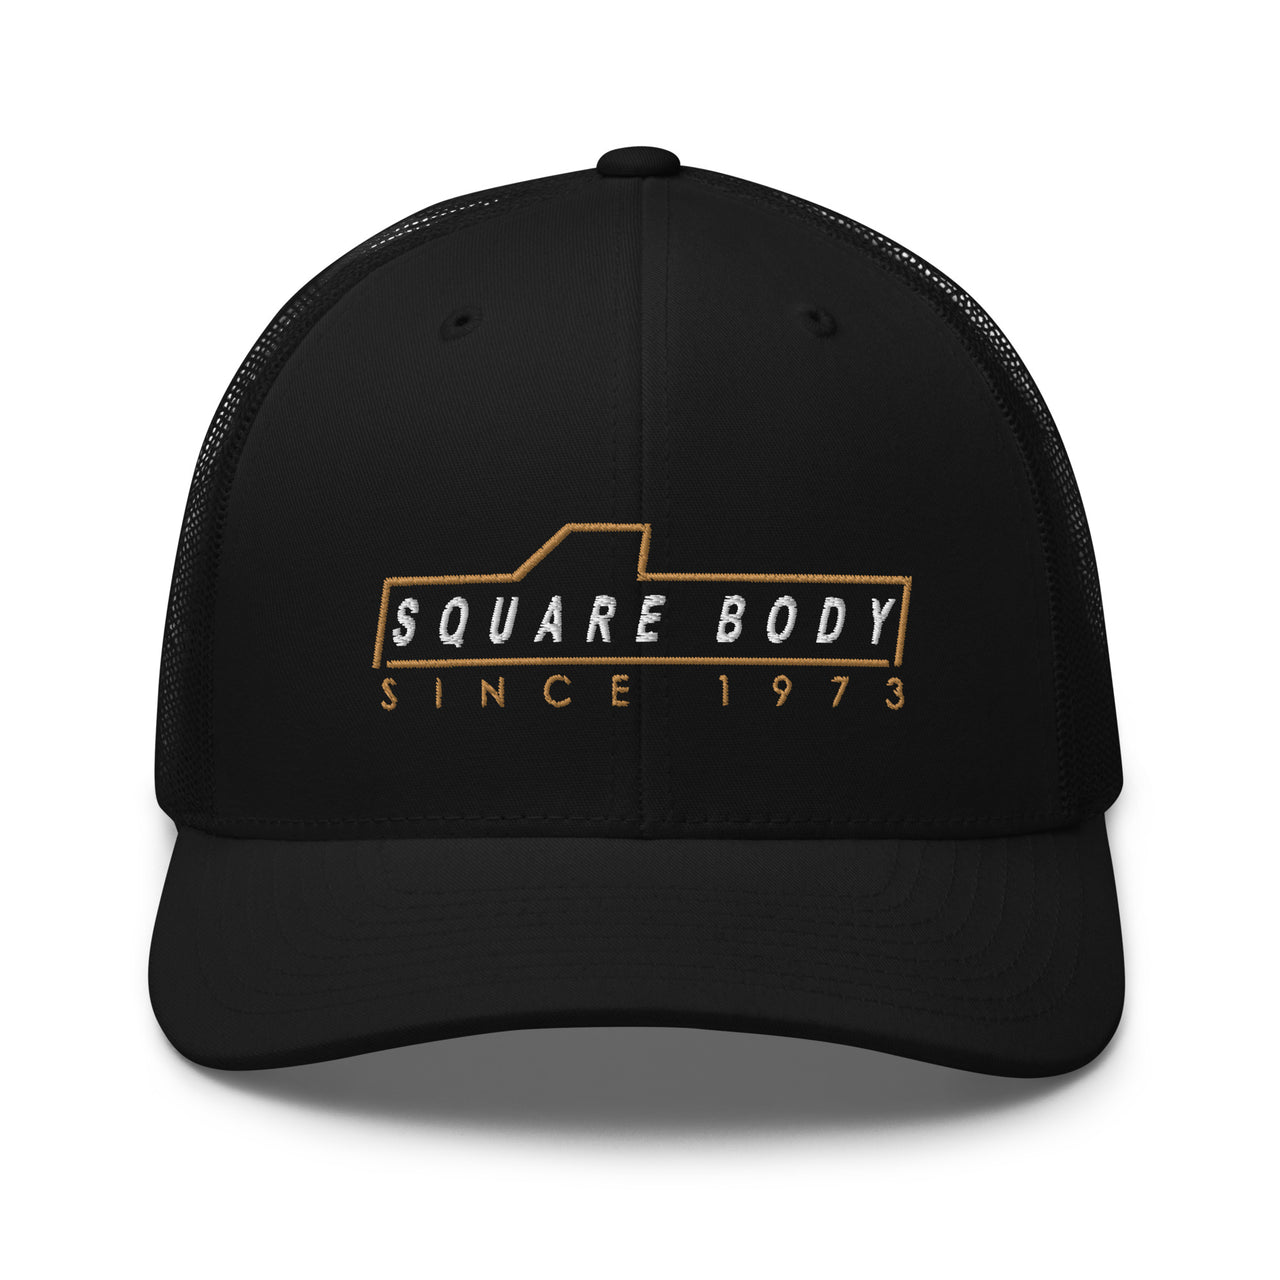 square body trucker hat in black - Aggressive Thread Auto Apparel